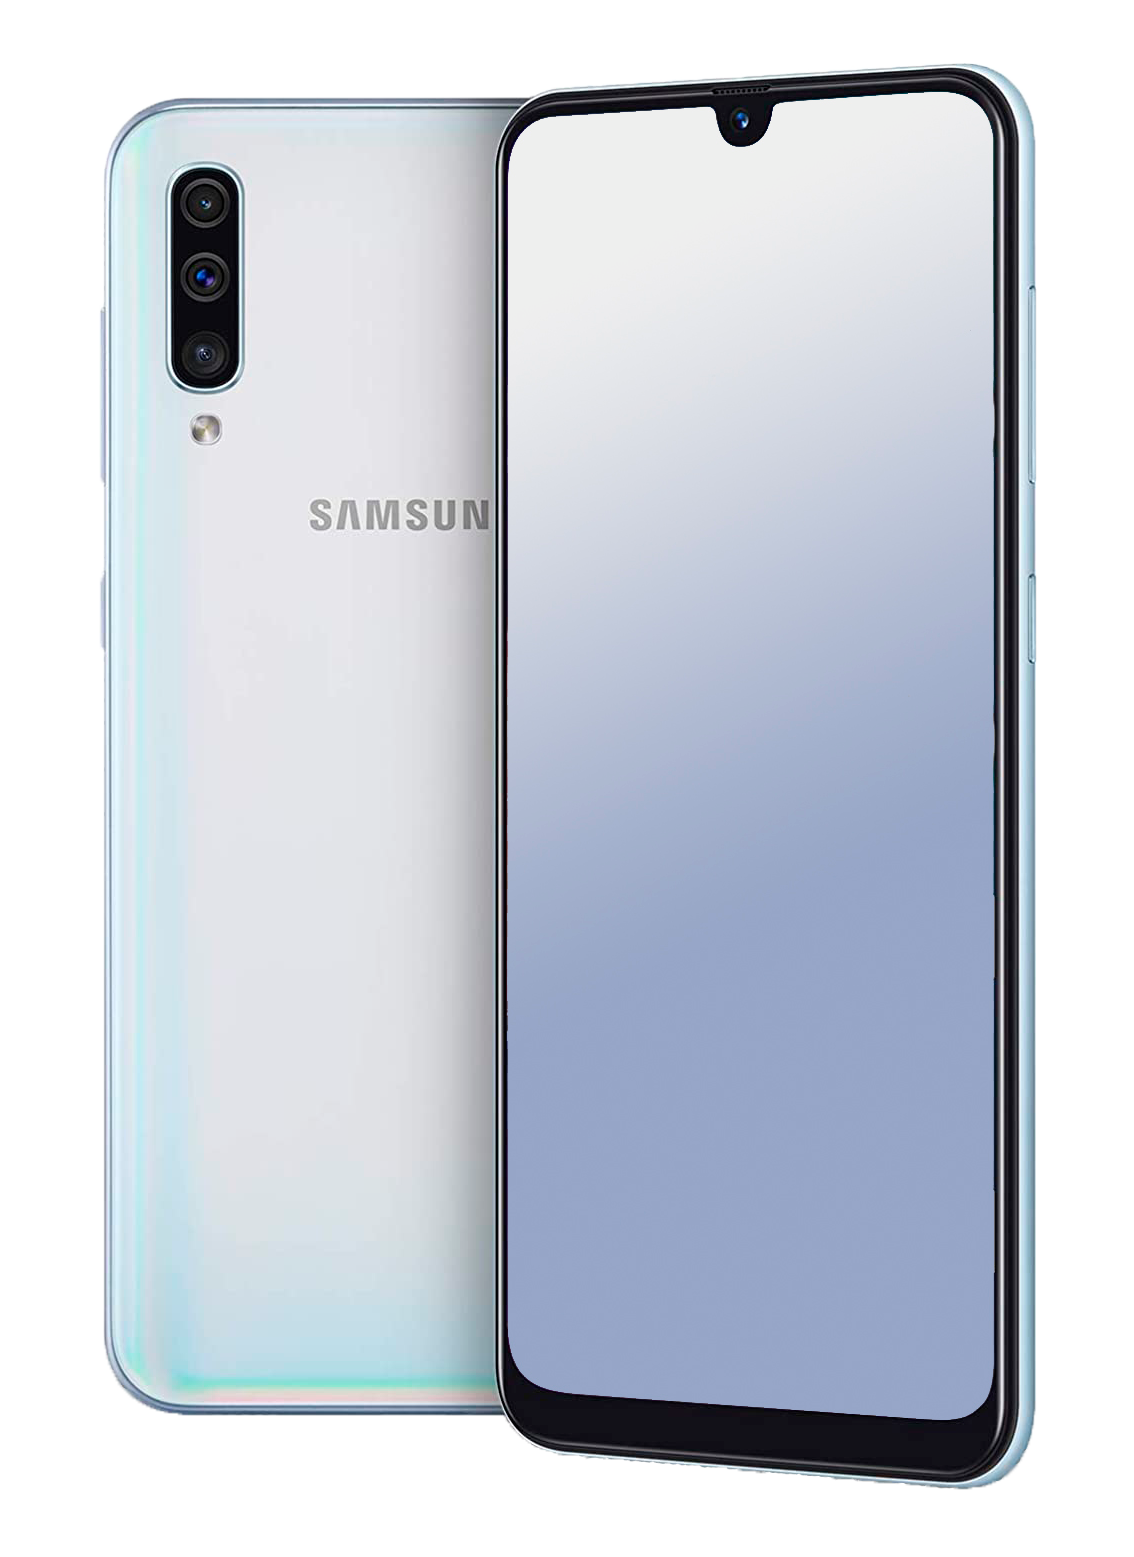 Samsung Galaxy A50 Dual-SIM weiß - Ohne Vertrag